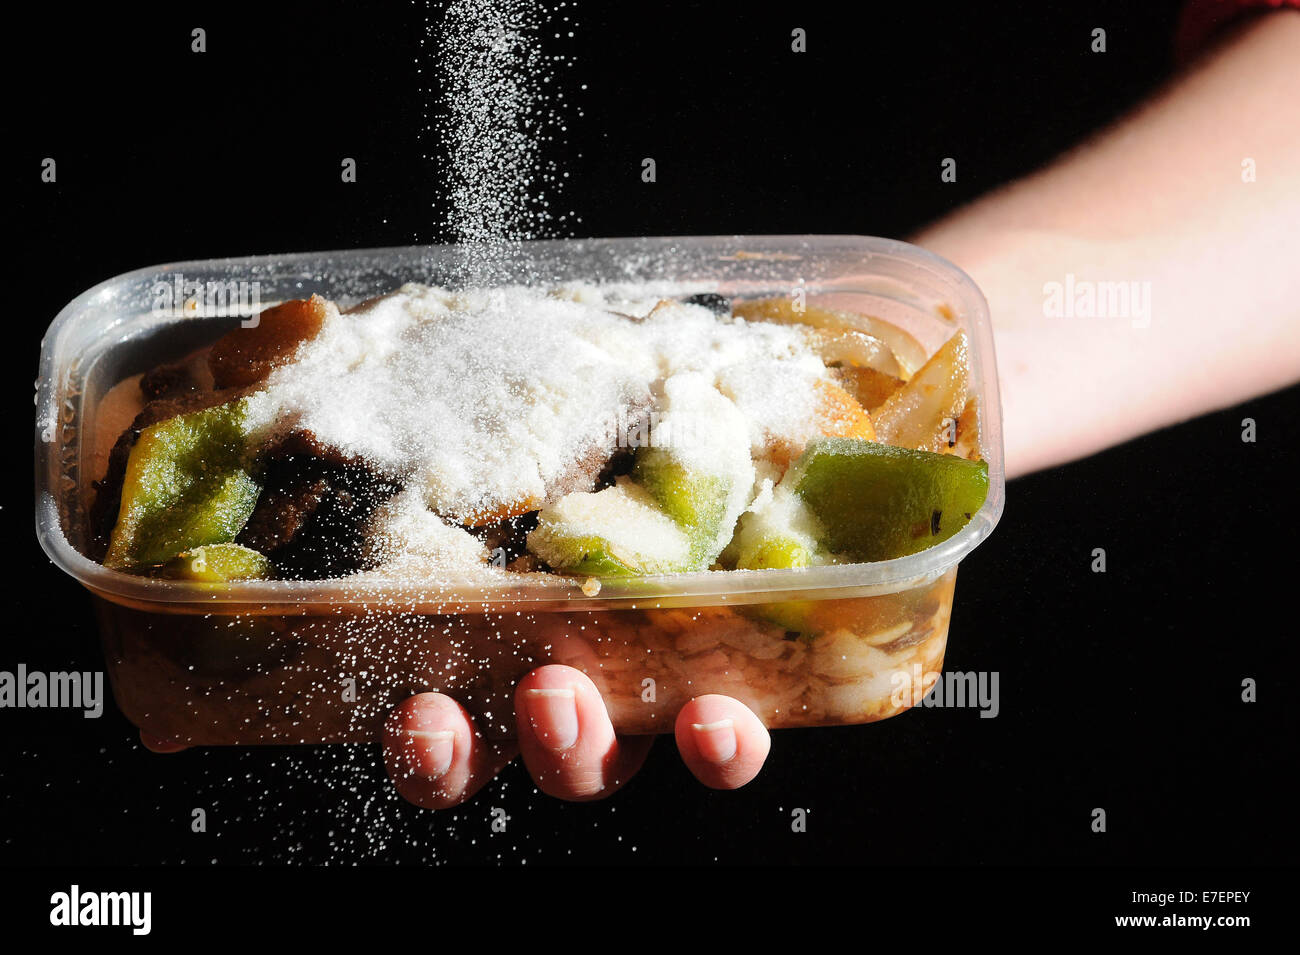 Eine Frau gießt Salz auf eine ungesunde Mahlzeit zum mitnehmen. Stockfoto